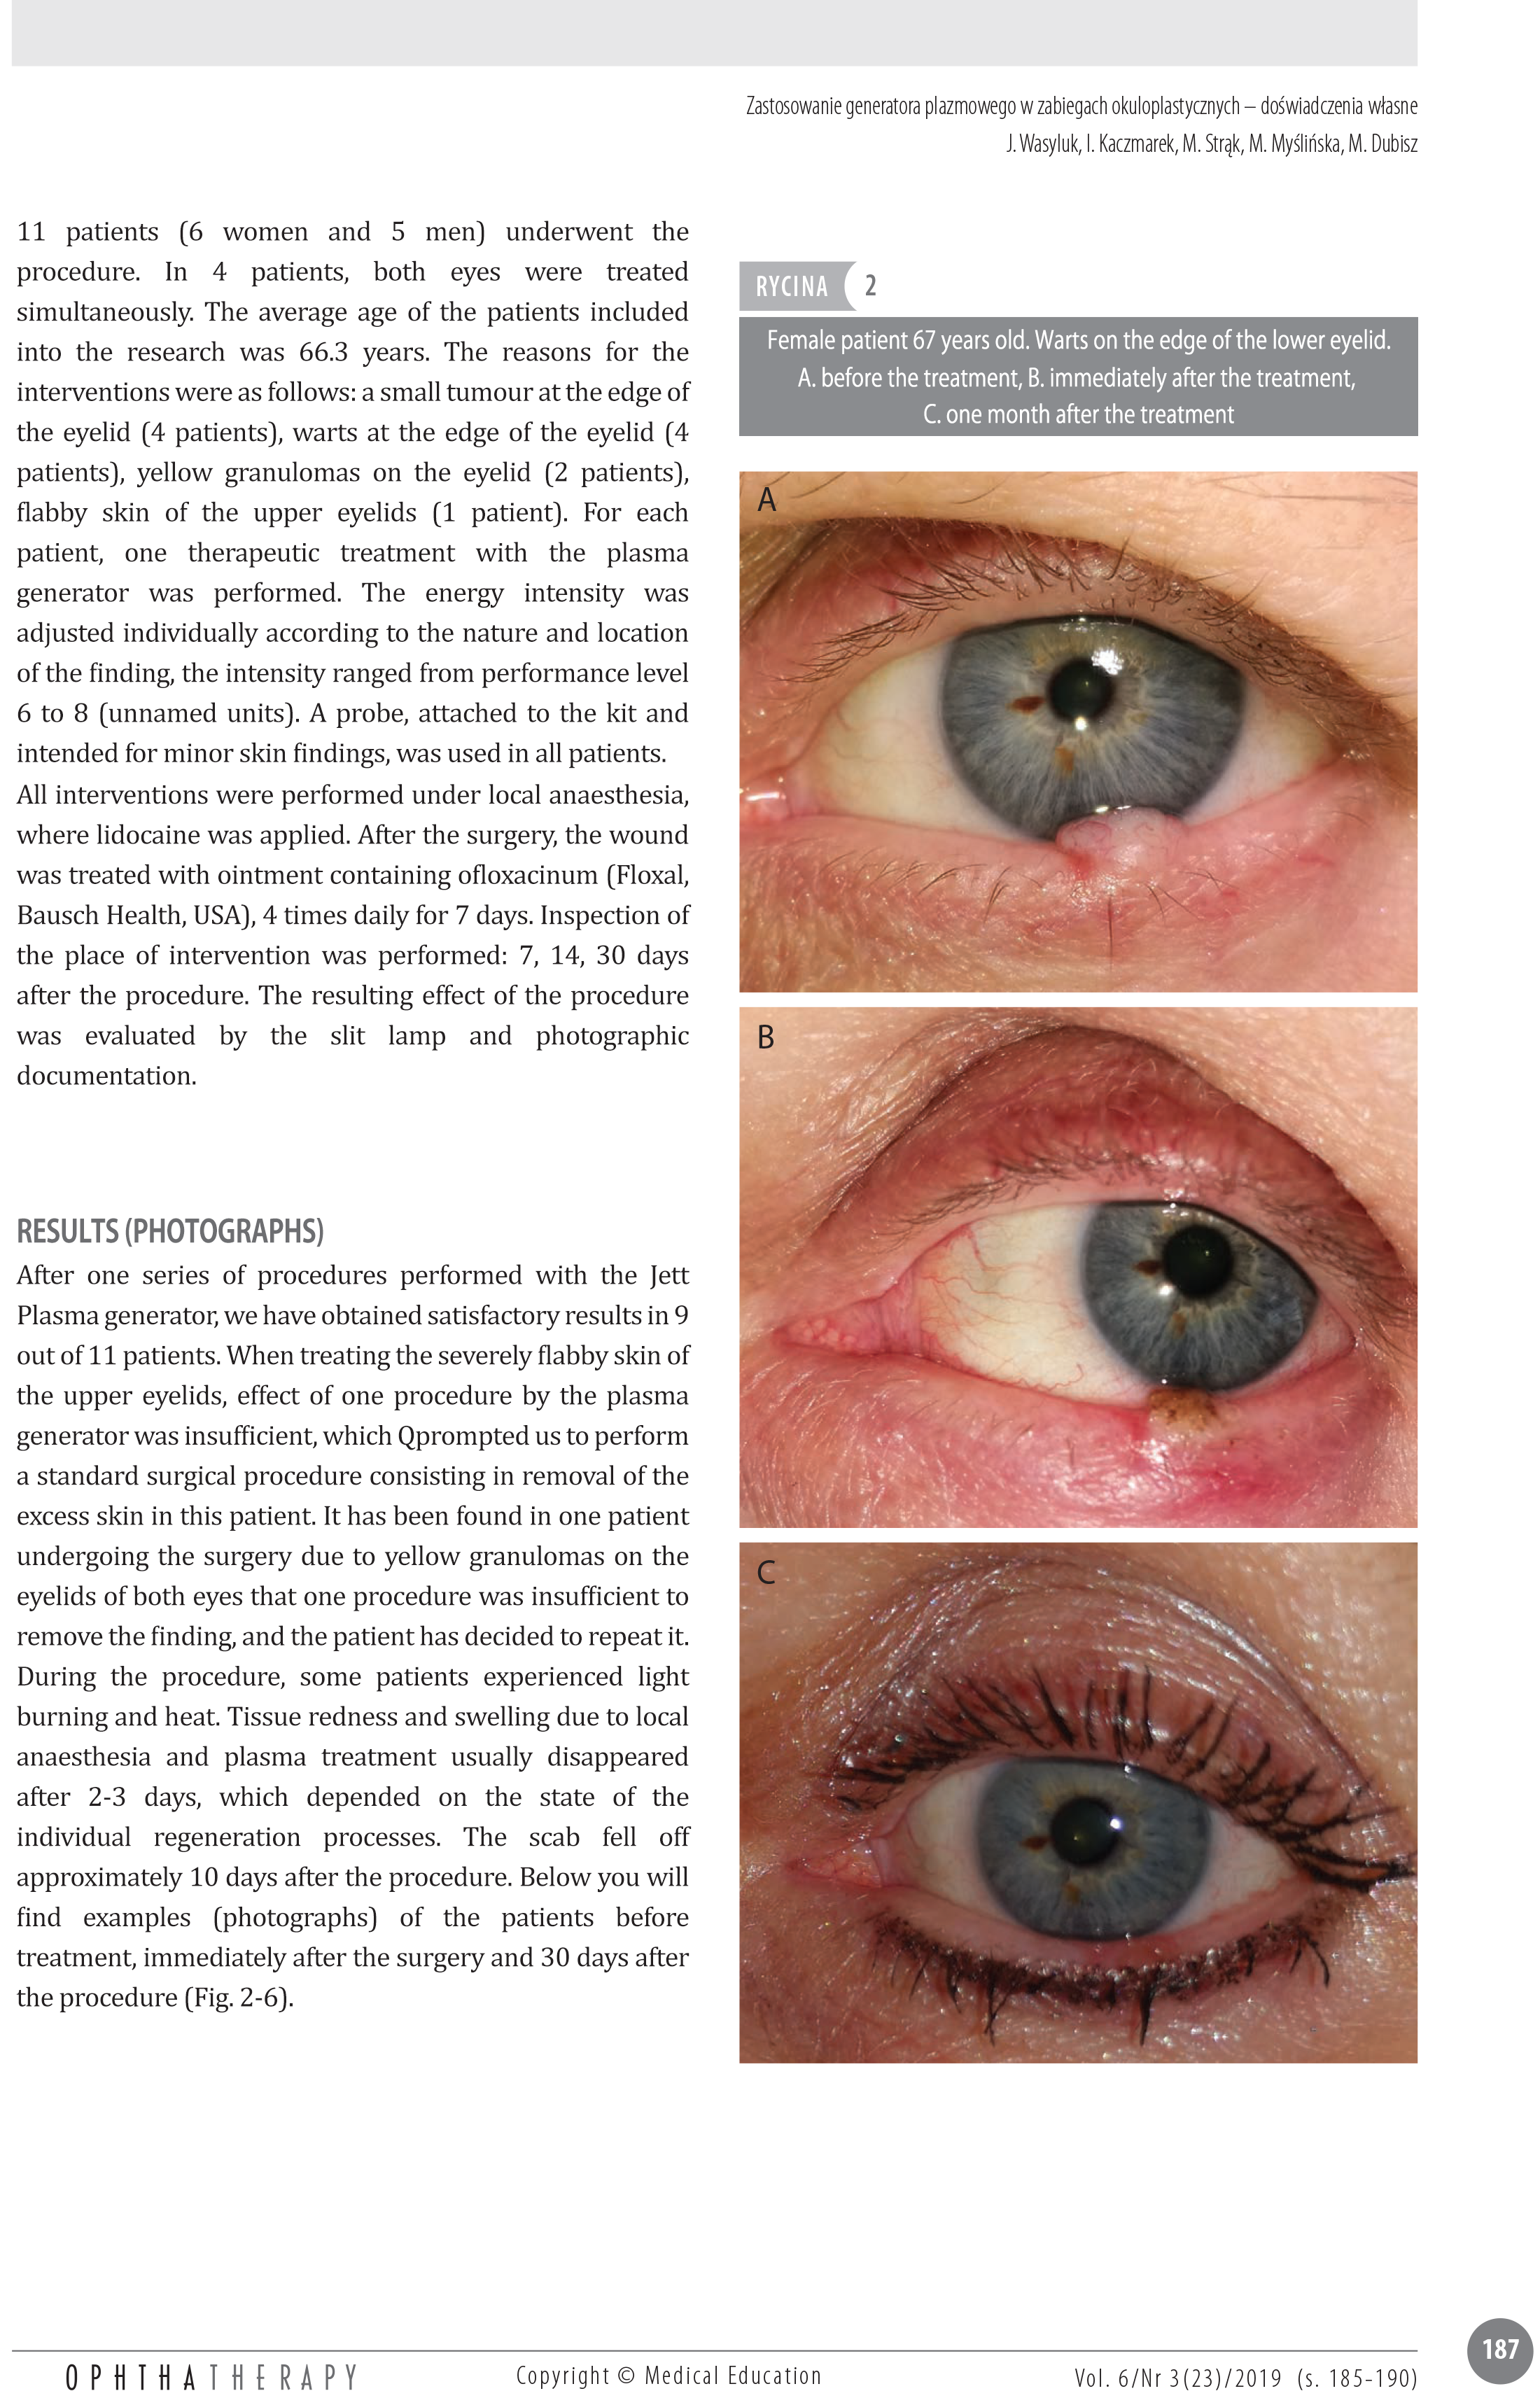 Boli ale vederii și ale ochilor